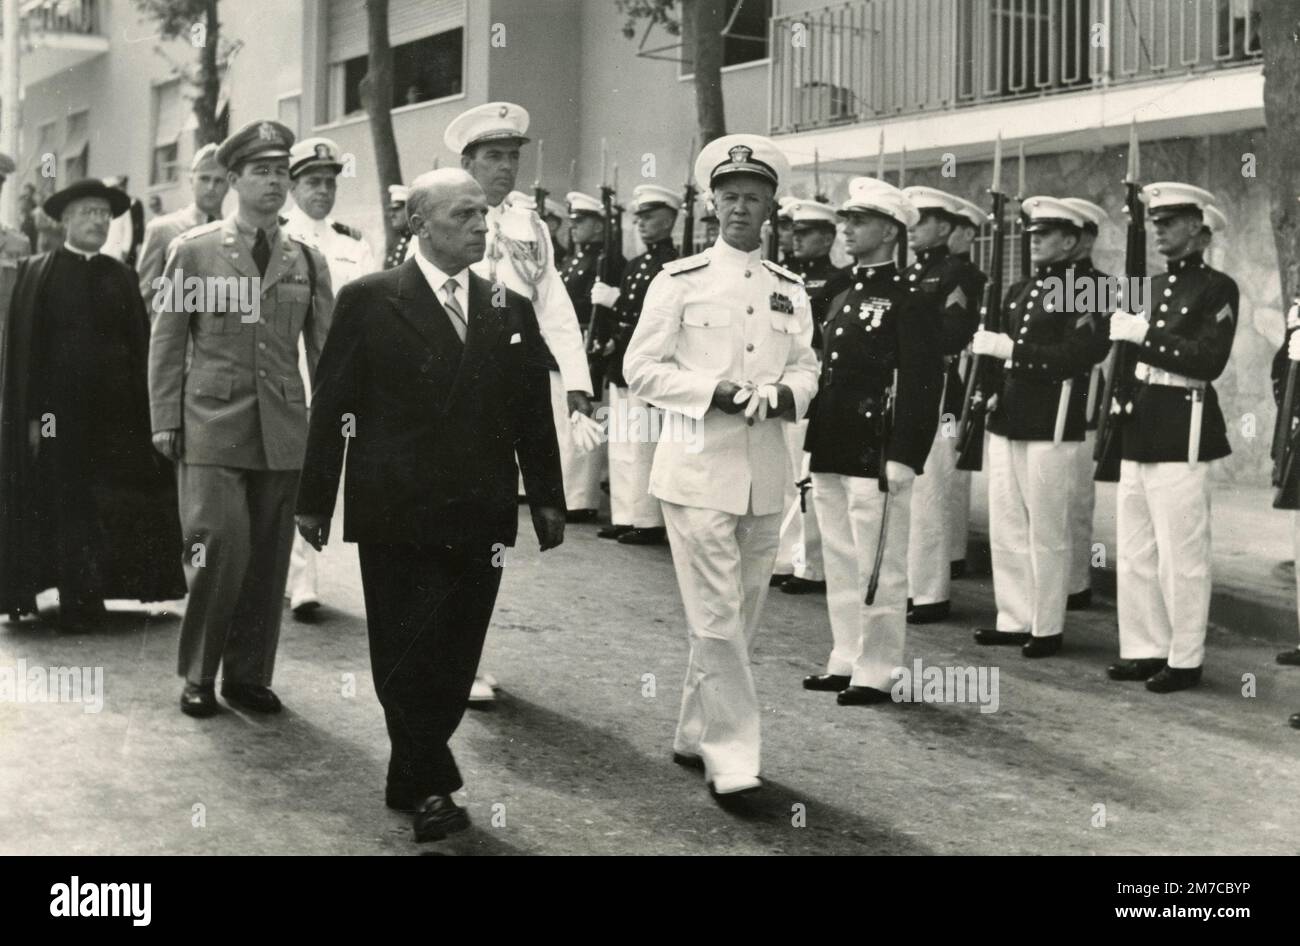 Figura politica italiana visita caserma militare americana, 1950s Foto Stock